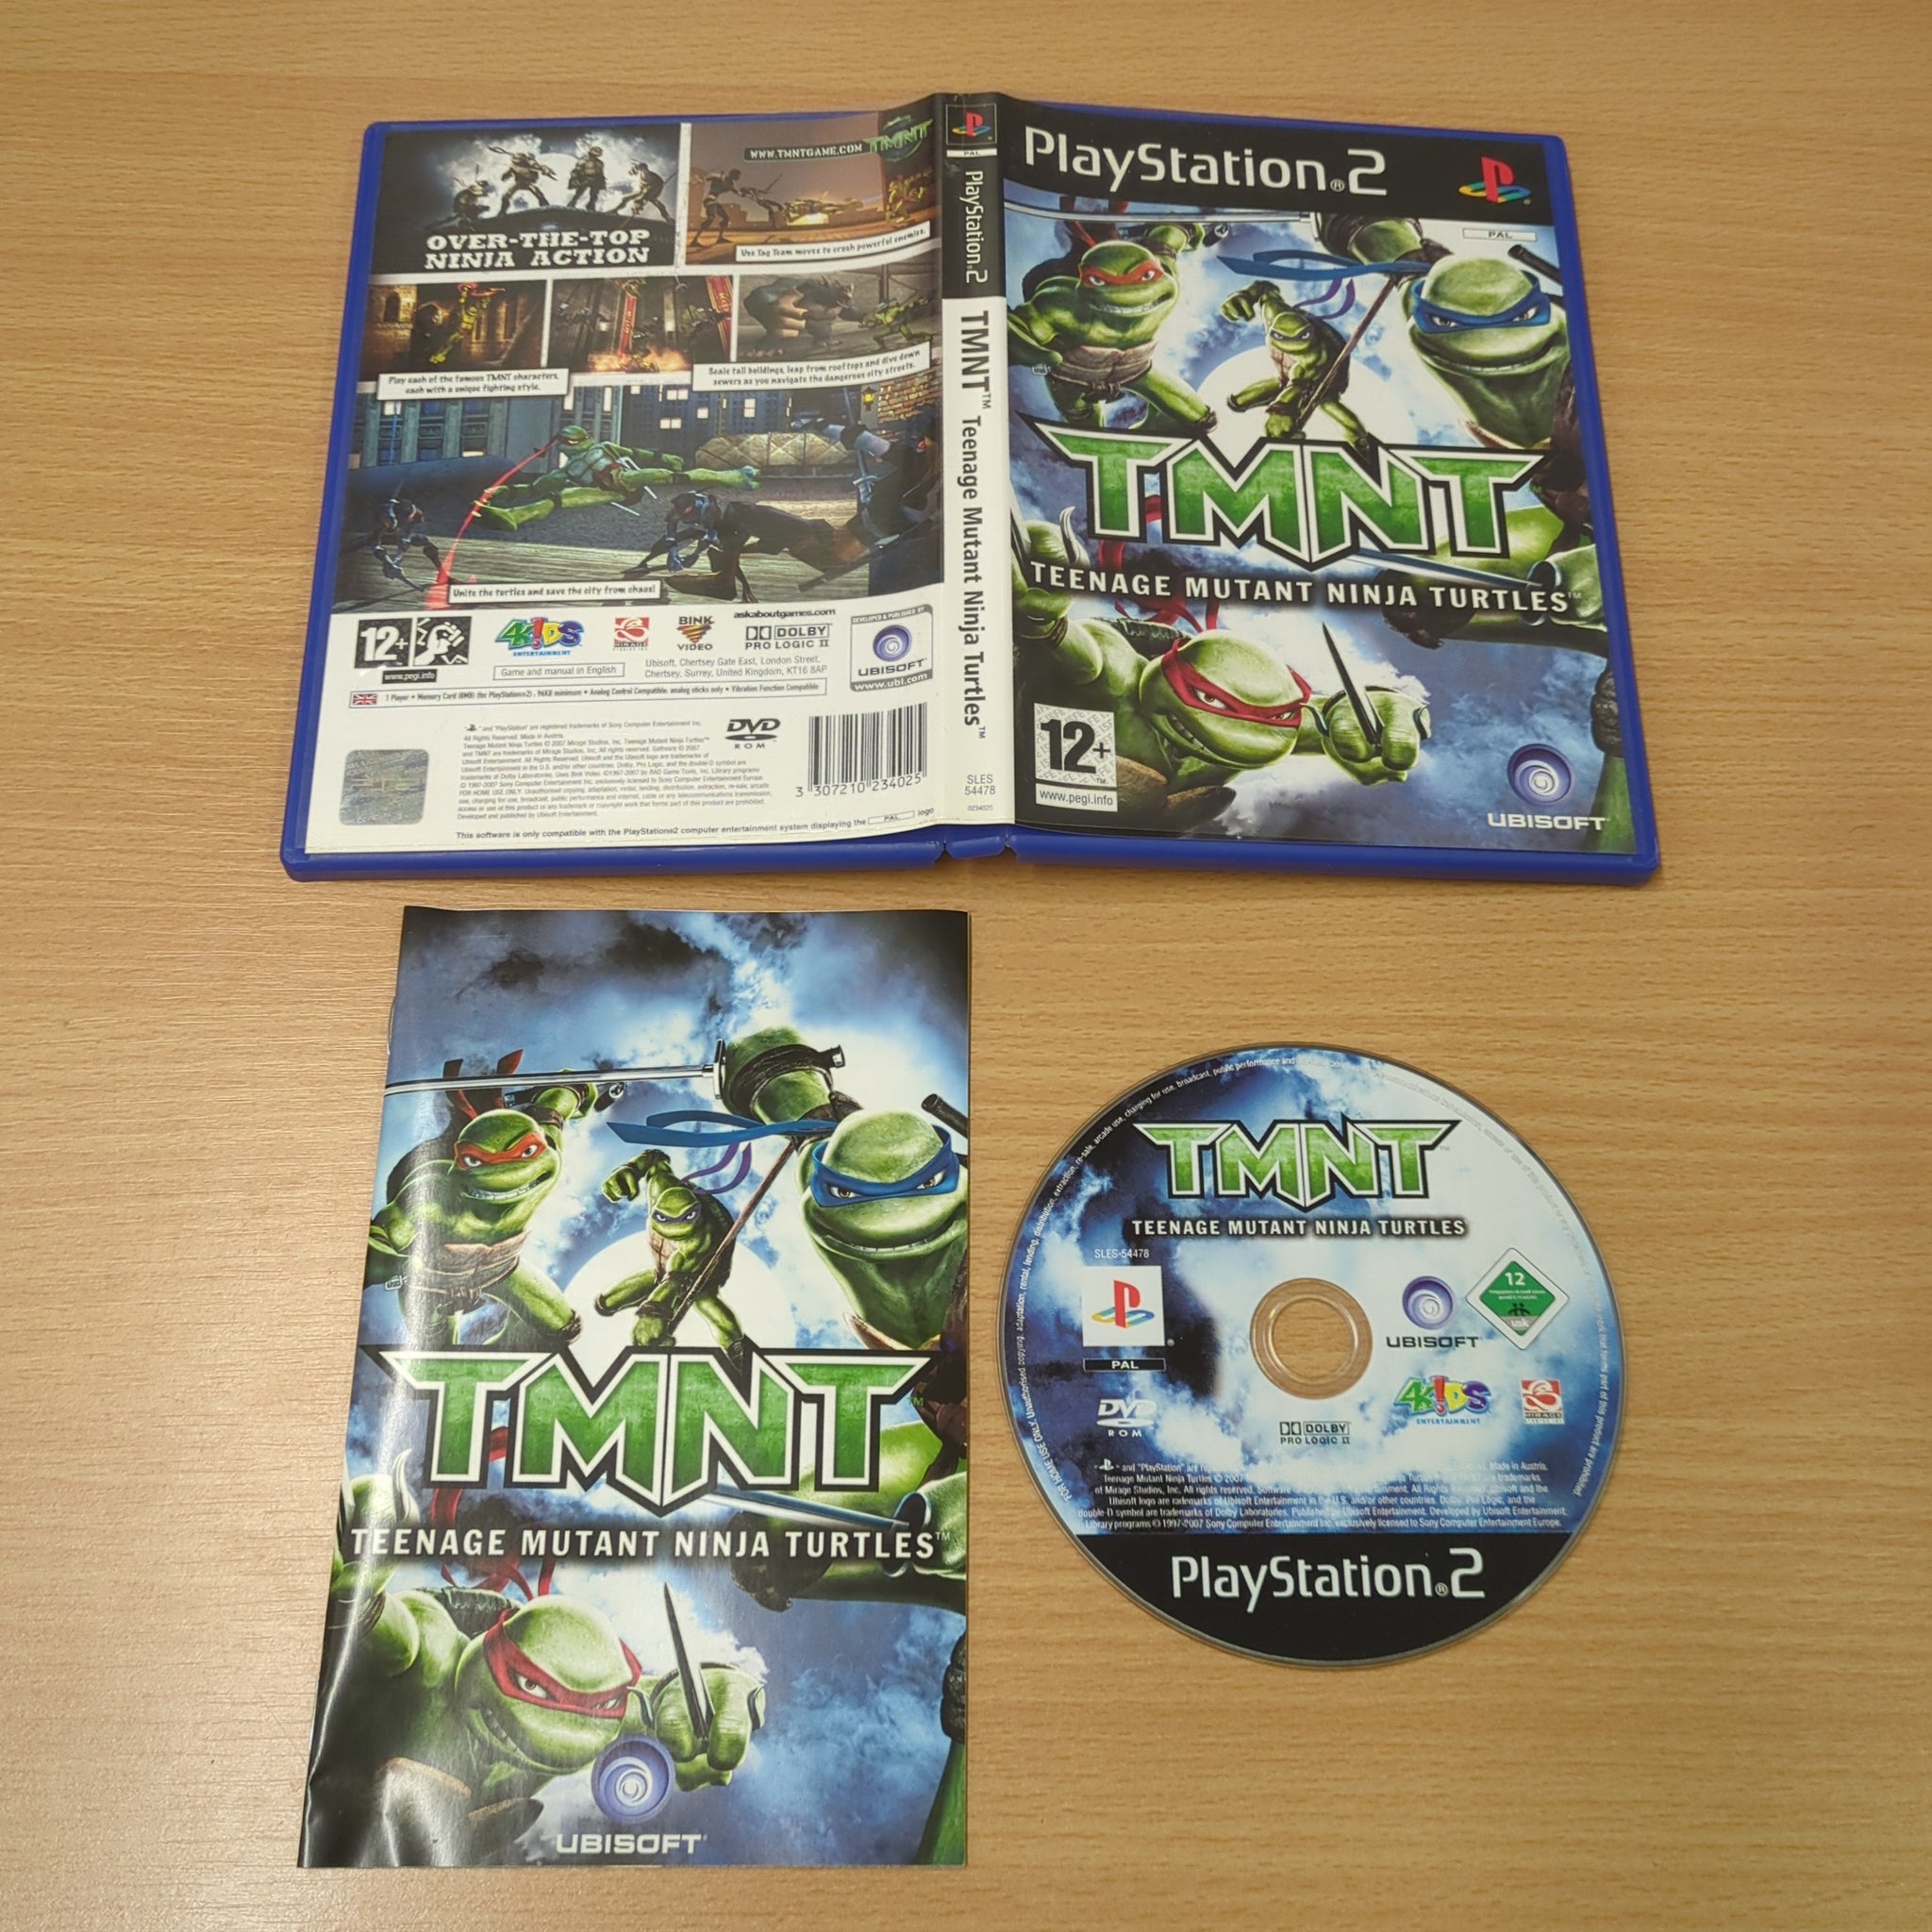 TMNT Teenage Mutant Ninja Turtles Sony PS2 game